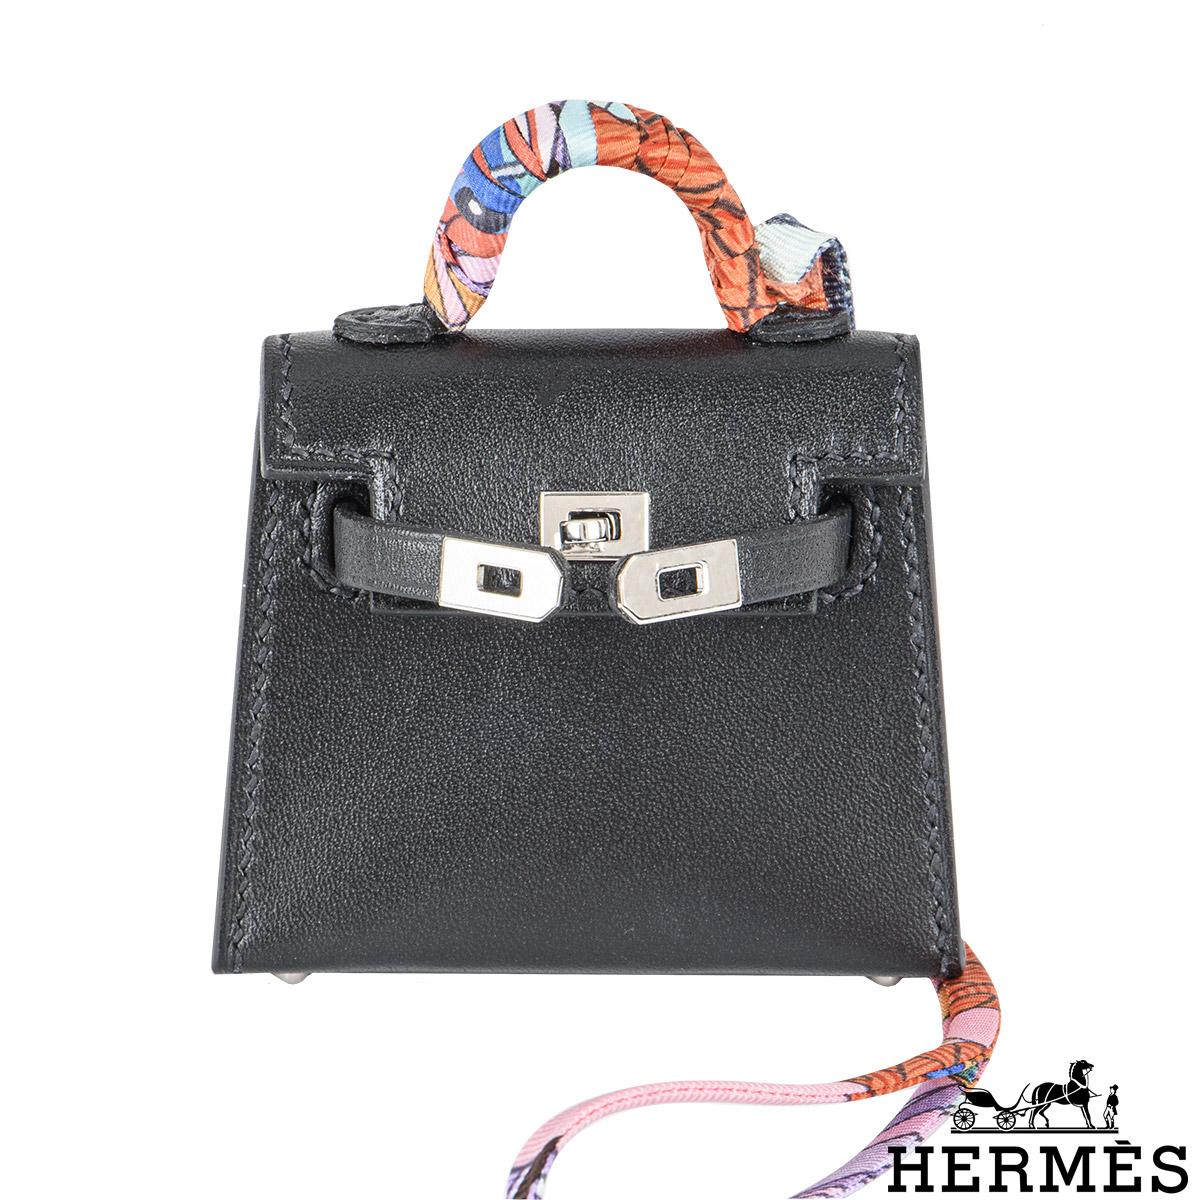 Eine schicke Hermès Mini Kelly Twilly Tasche mit Charme. Das Äußere dieser Kelly Bag Charm ist aus Tadelakt-Leder in Noir gefertigt und mit tonalen Nähten versehen. Sie ist mit Palladium-Beschlägen und einem Knebelverschluss an der Vorderseite